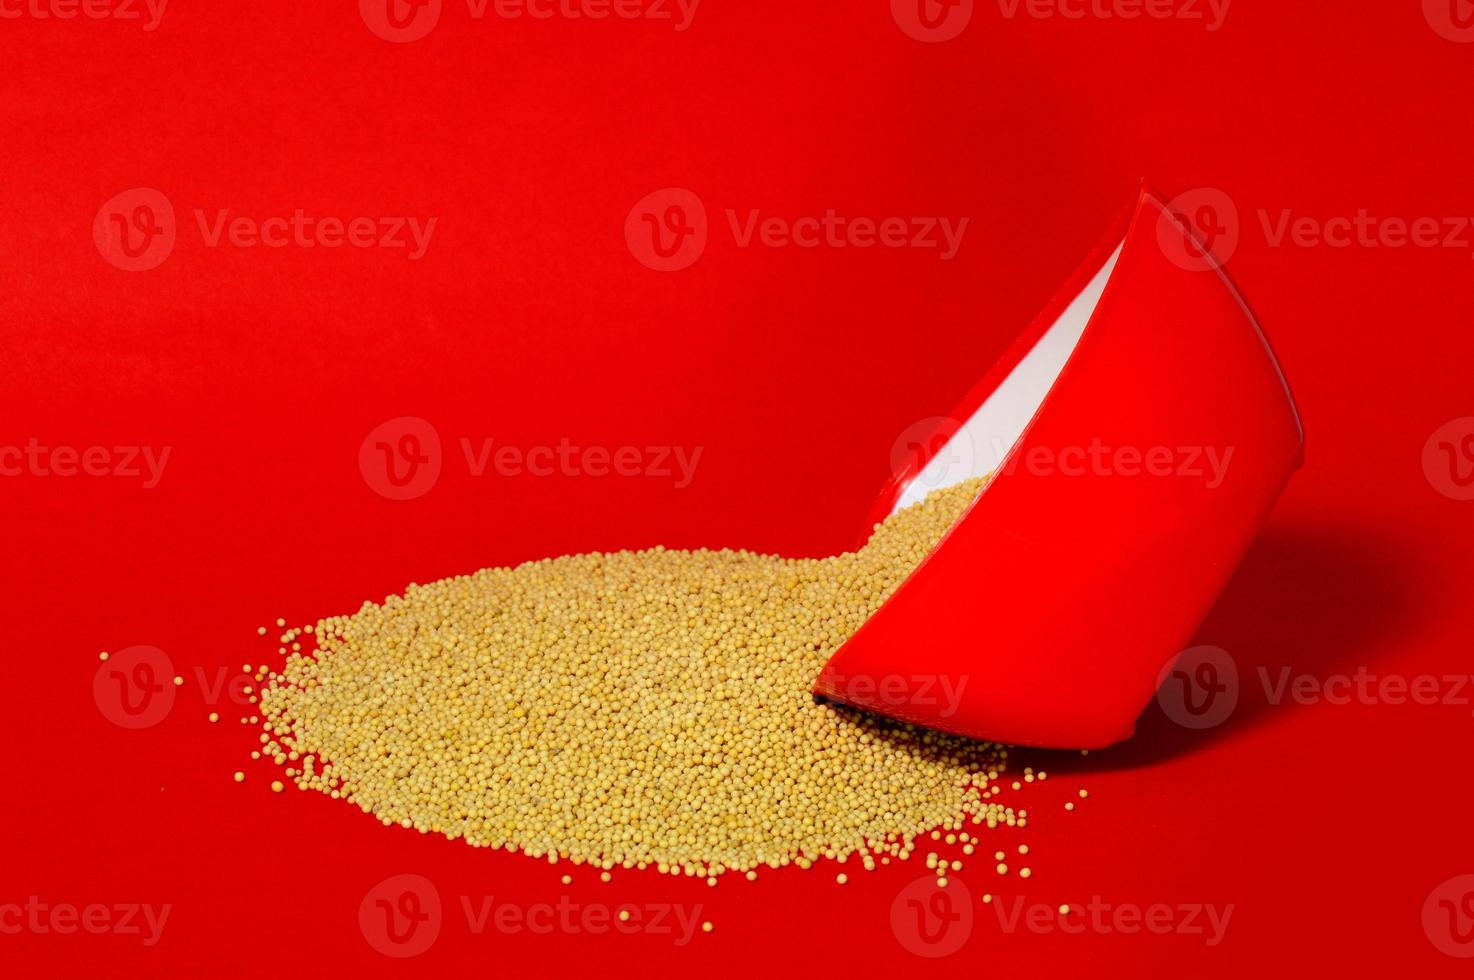 gele mosterdzaadjes in rode kom geïsoleerd op rode achtergrond foto